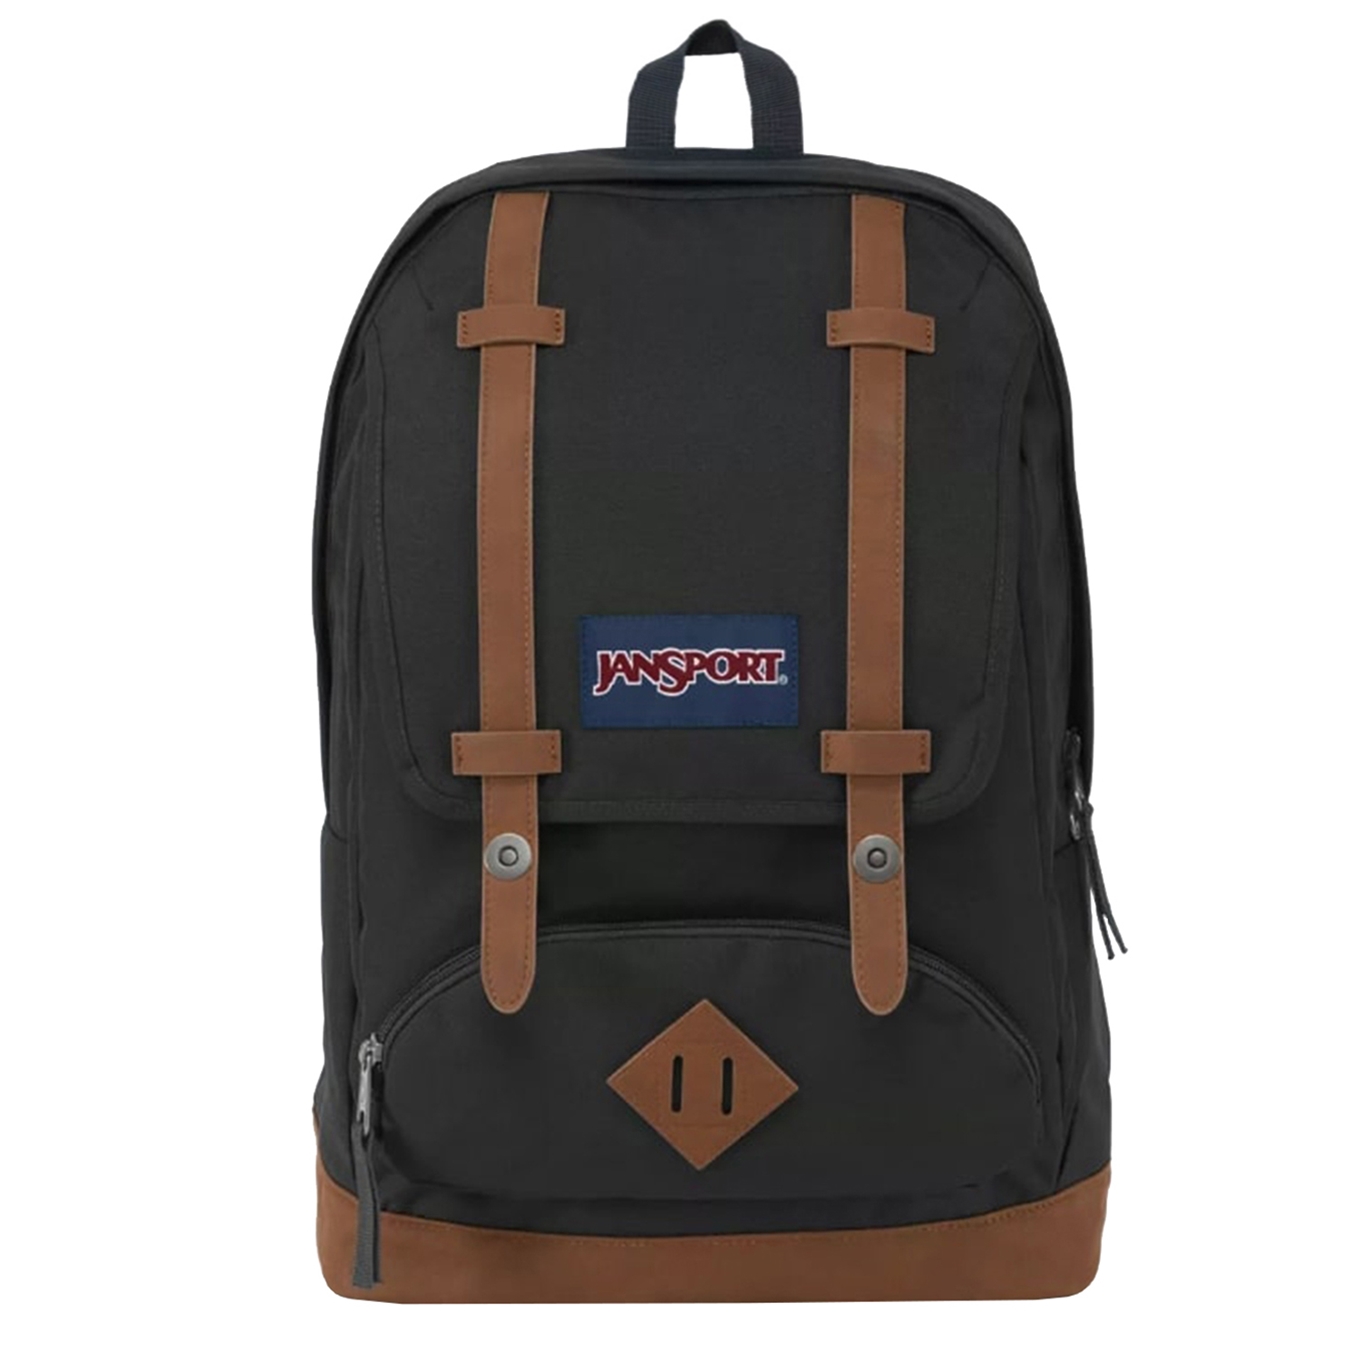 JanSport Cortlandt black backpack